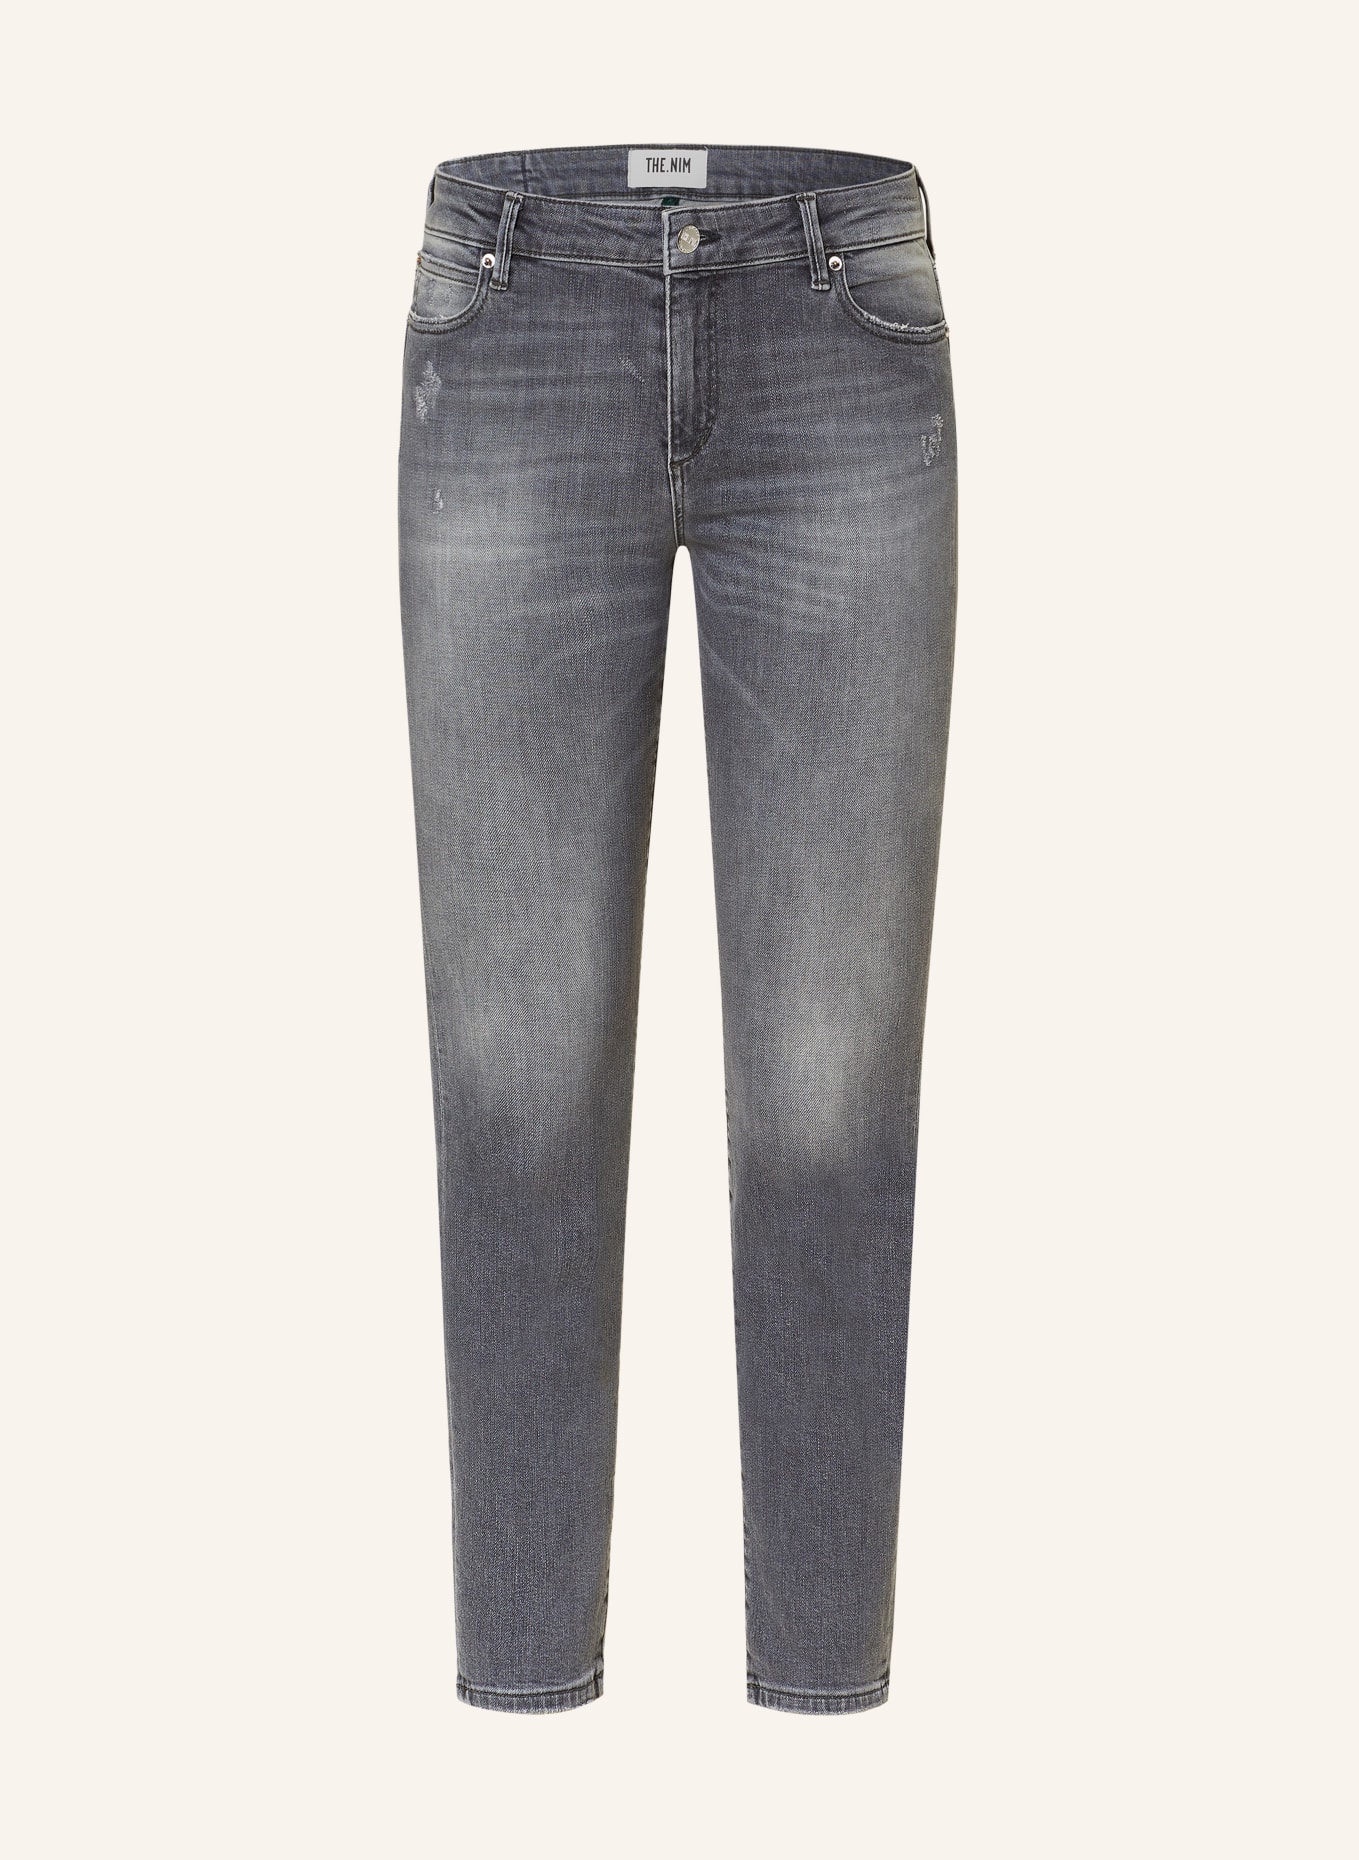 THE.NIM STANDARD Skinny Jeans HOLLY, Farbe: W736-GRY GREY (Bild 1)